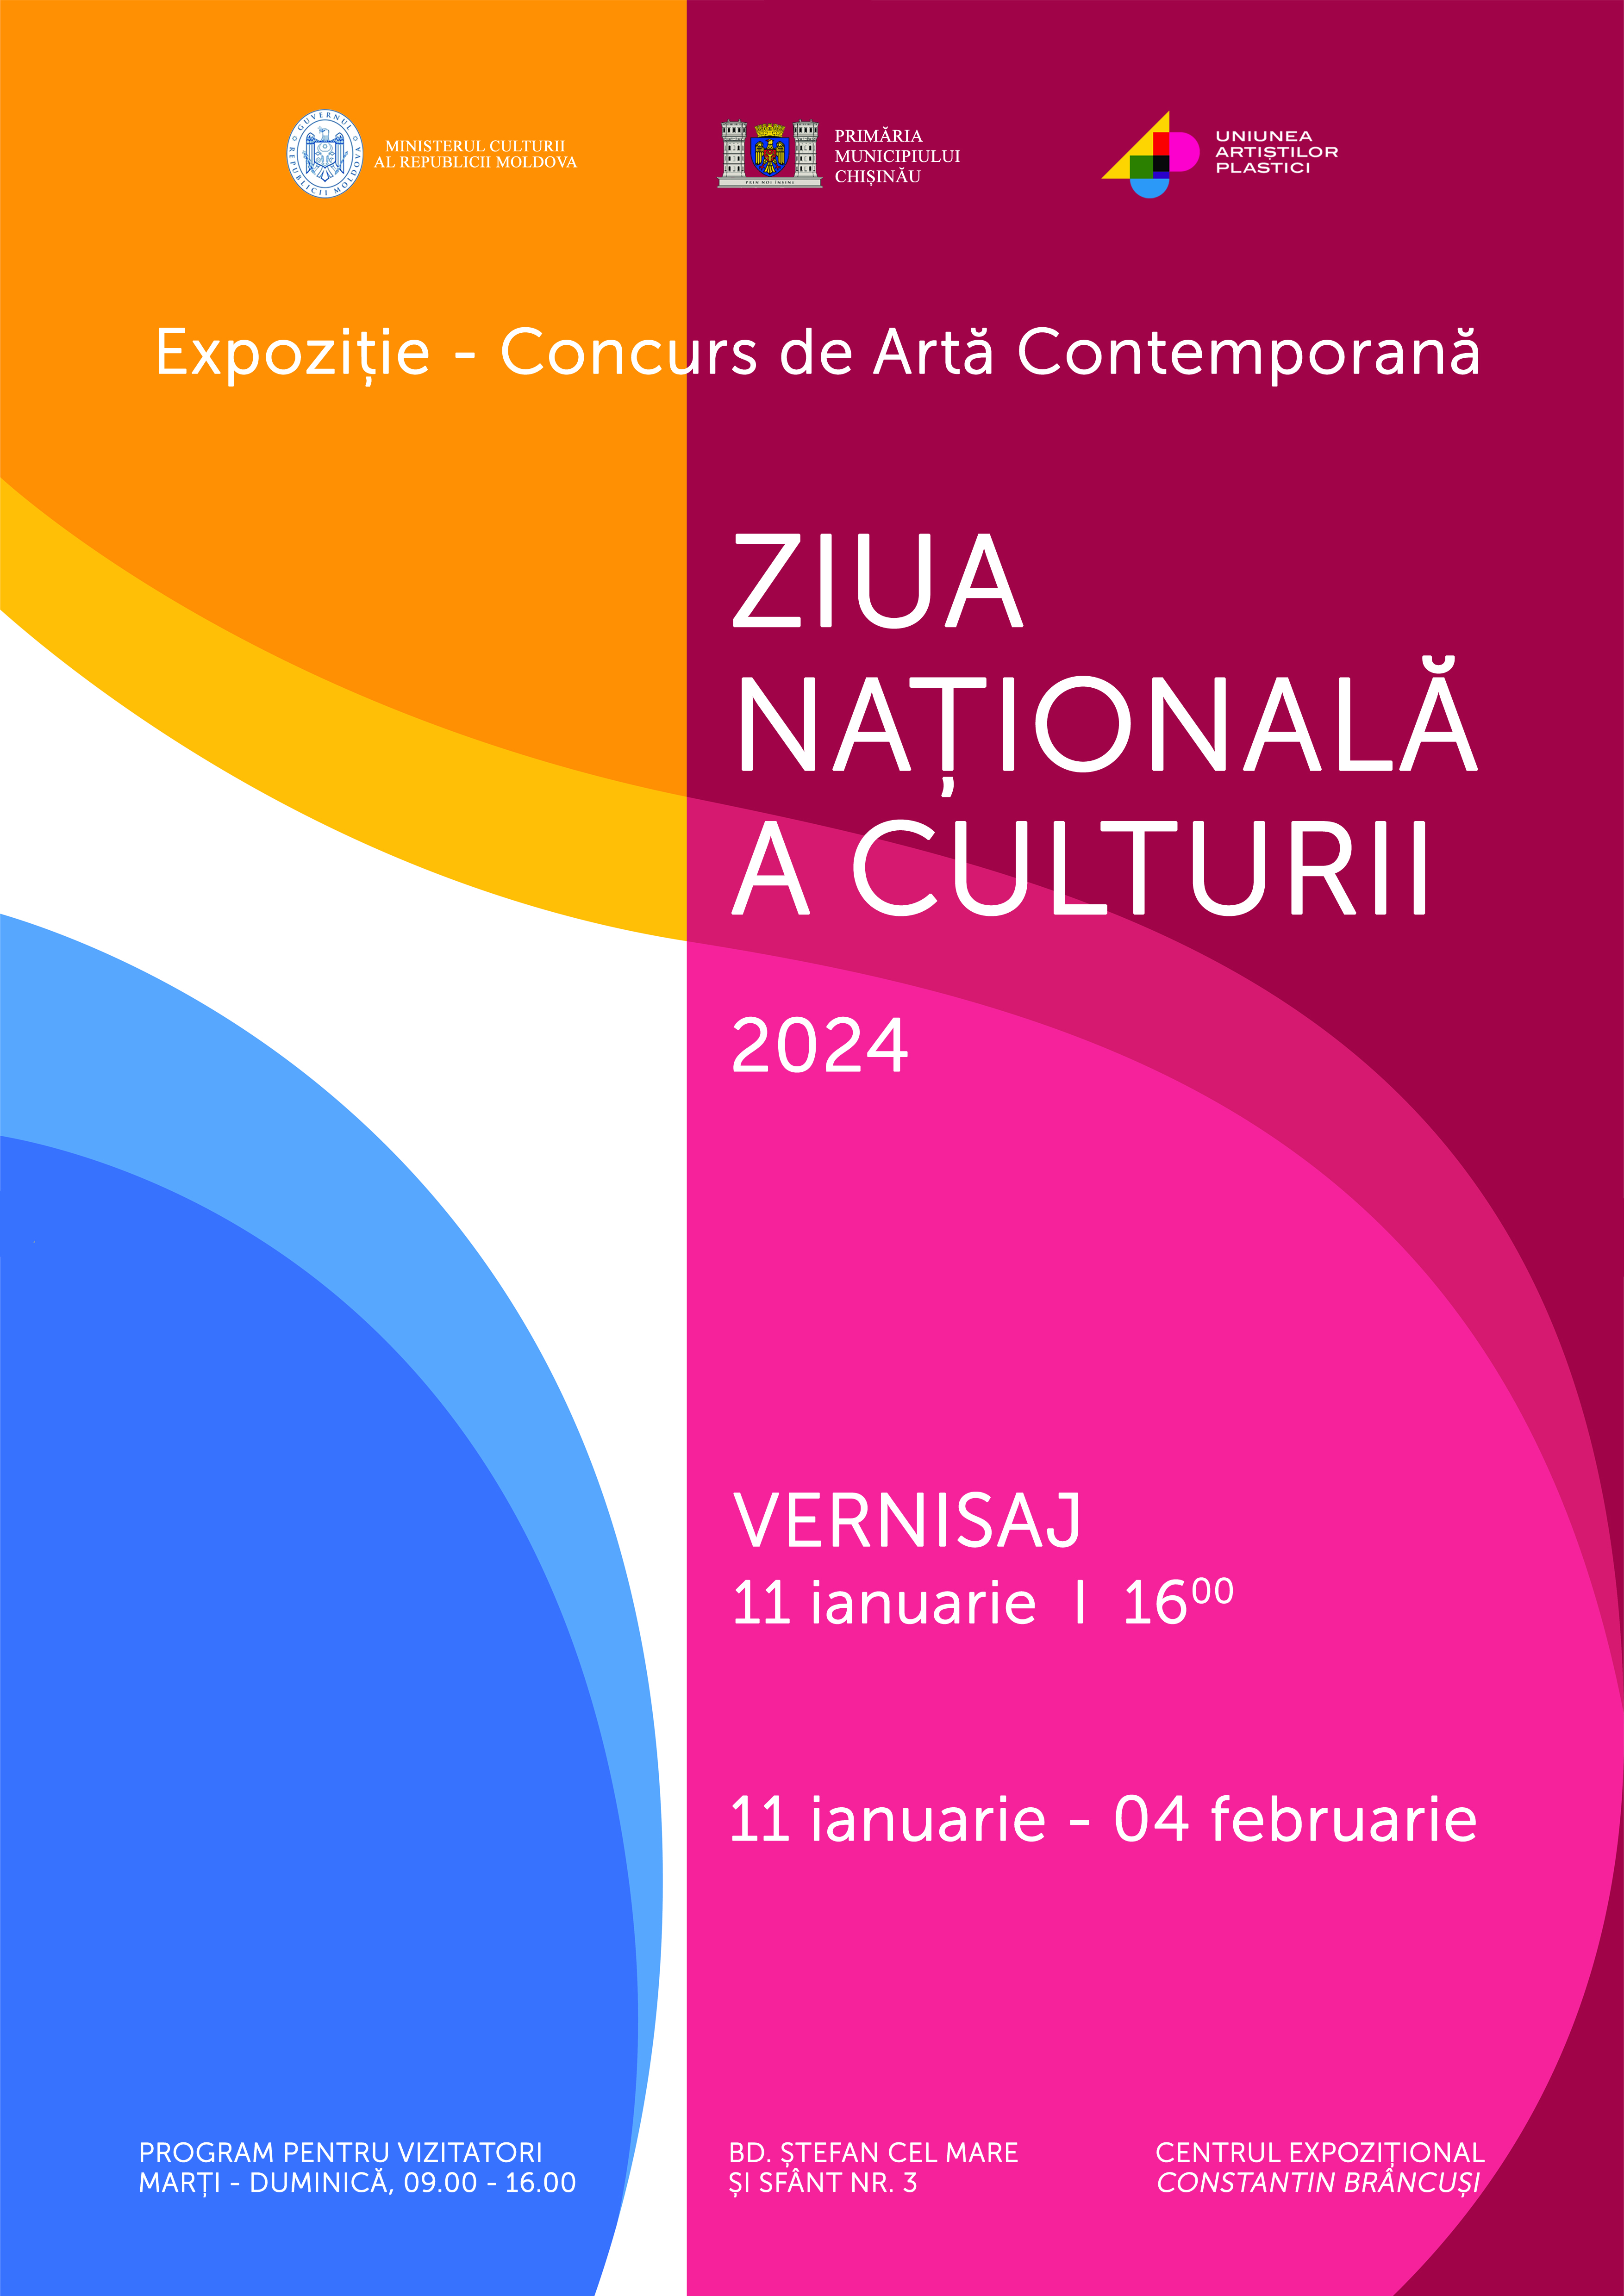 Premianții Expoziței-Concurs Ziua Națională a Culturii- 2024